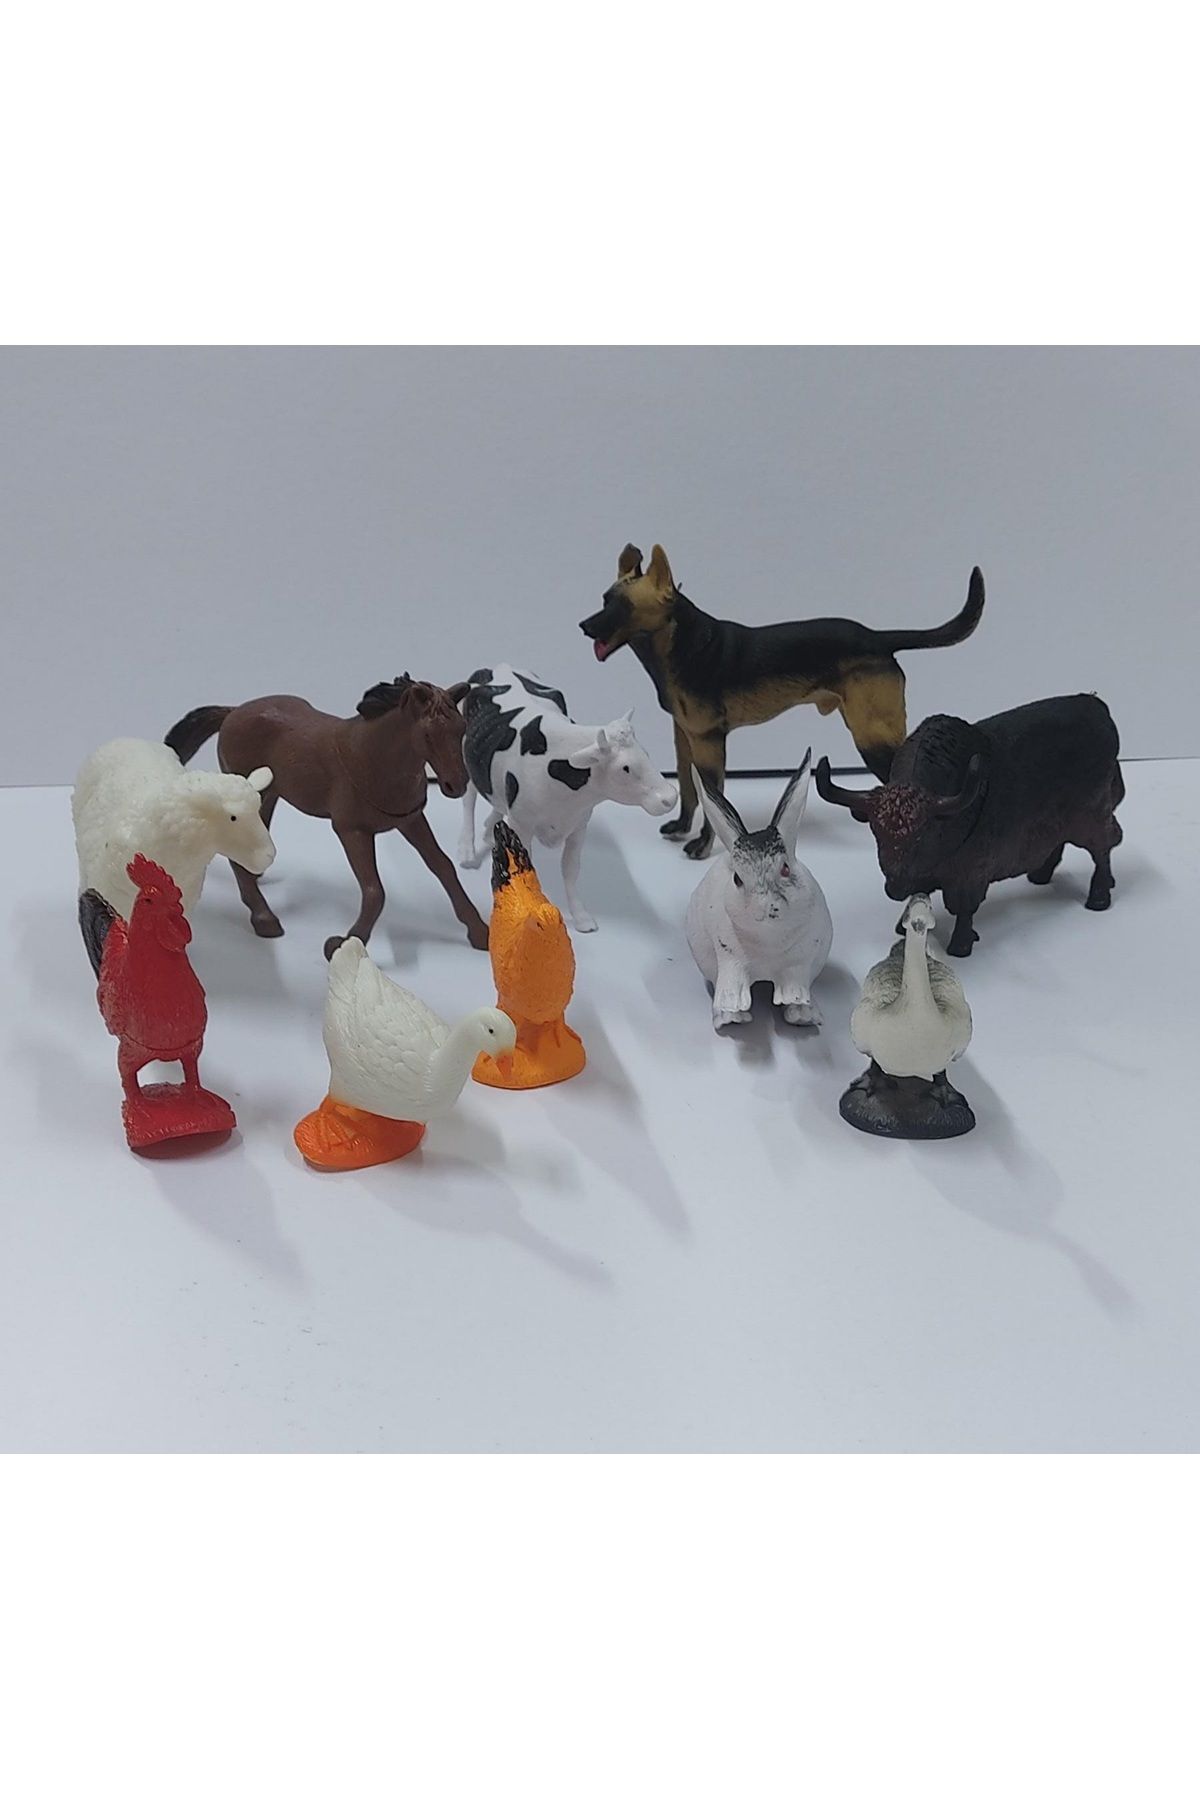 Tower Toys Oyuncak Çiftlik Hayvanları 10 Parça Hayvan Seti Kurt İnek At Koyun Boğa Tavşan Ördek Horoz Kaz Tavuk